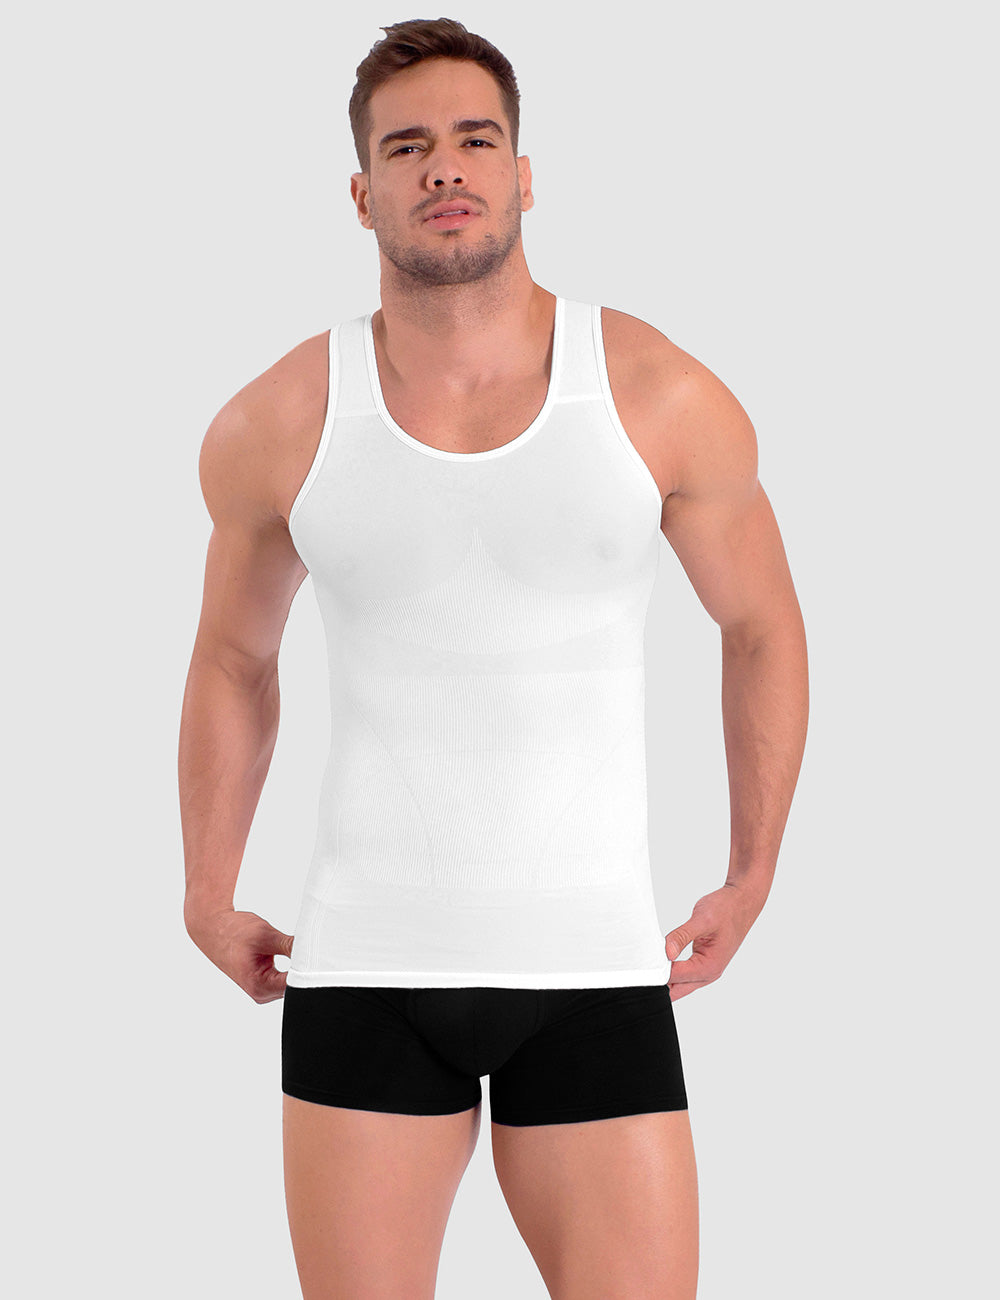 Buy Jockey Men's Cotton Dry Fit Vest (Black, Medium) at